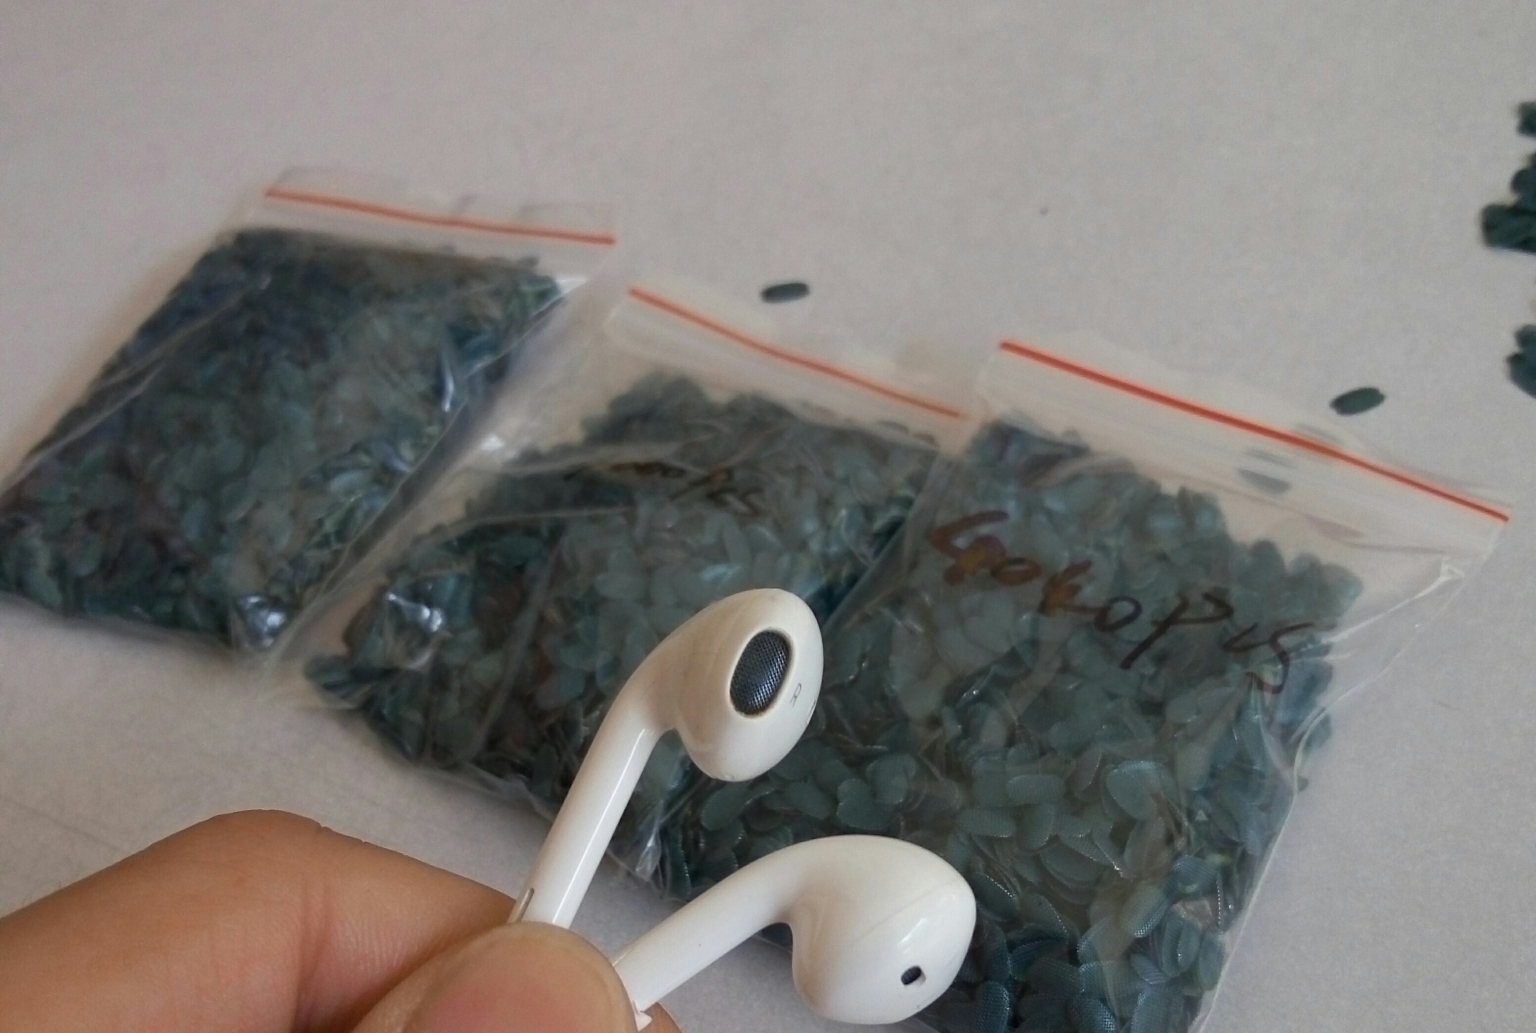 供应用于耳机生产的苹果五代耳机原装宝蓝钢网，东莞特供苹果五代耳机钢网，苹果耳机钢网，宝蓝色钢网